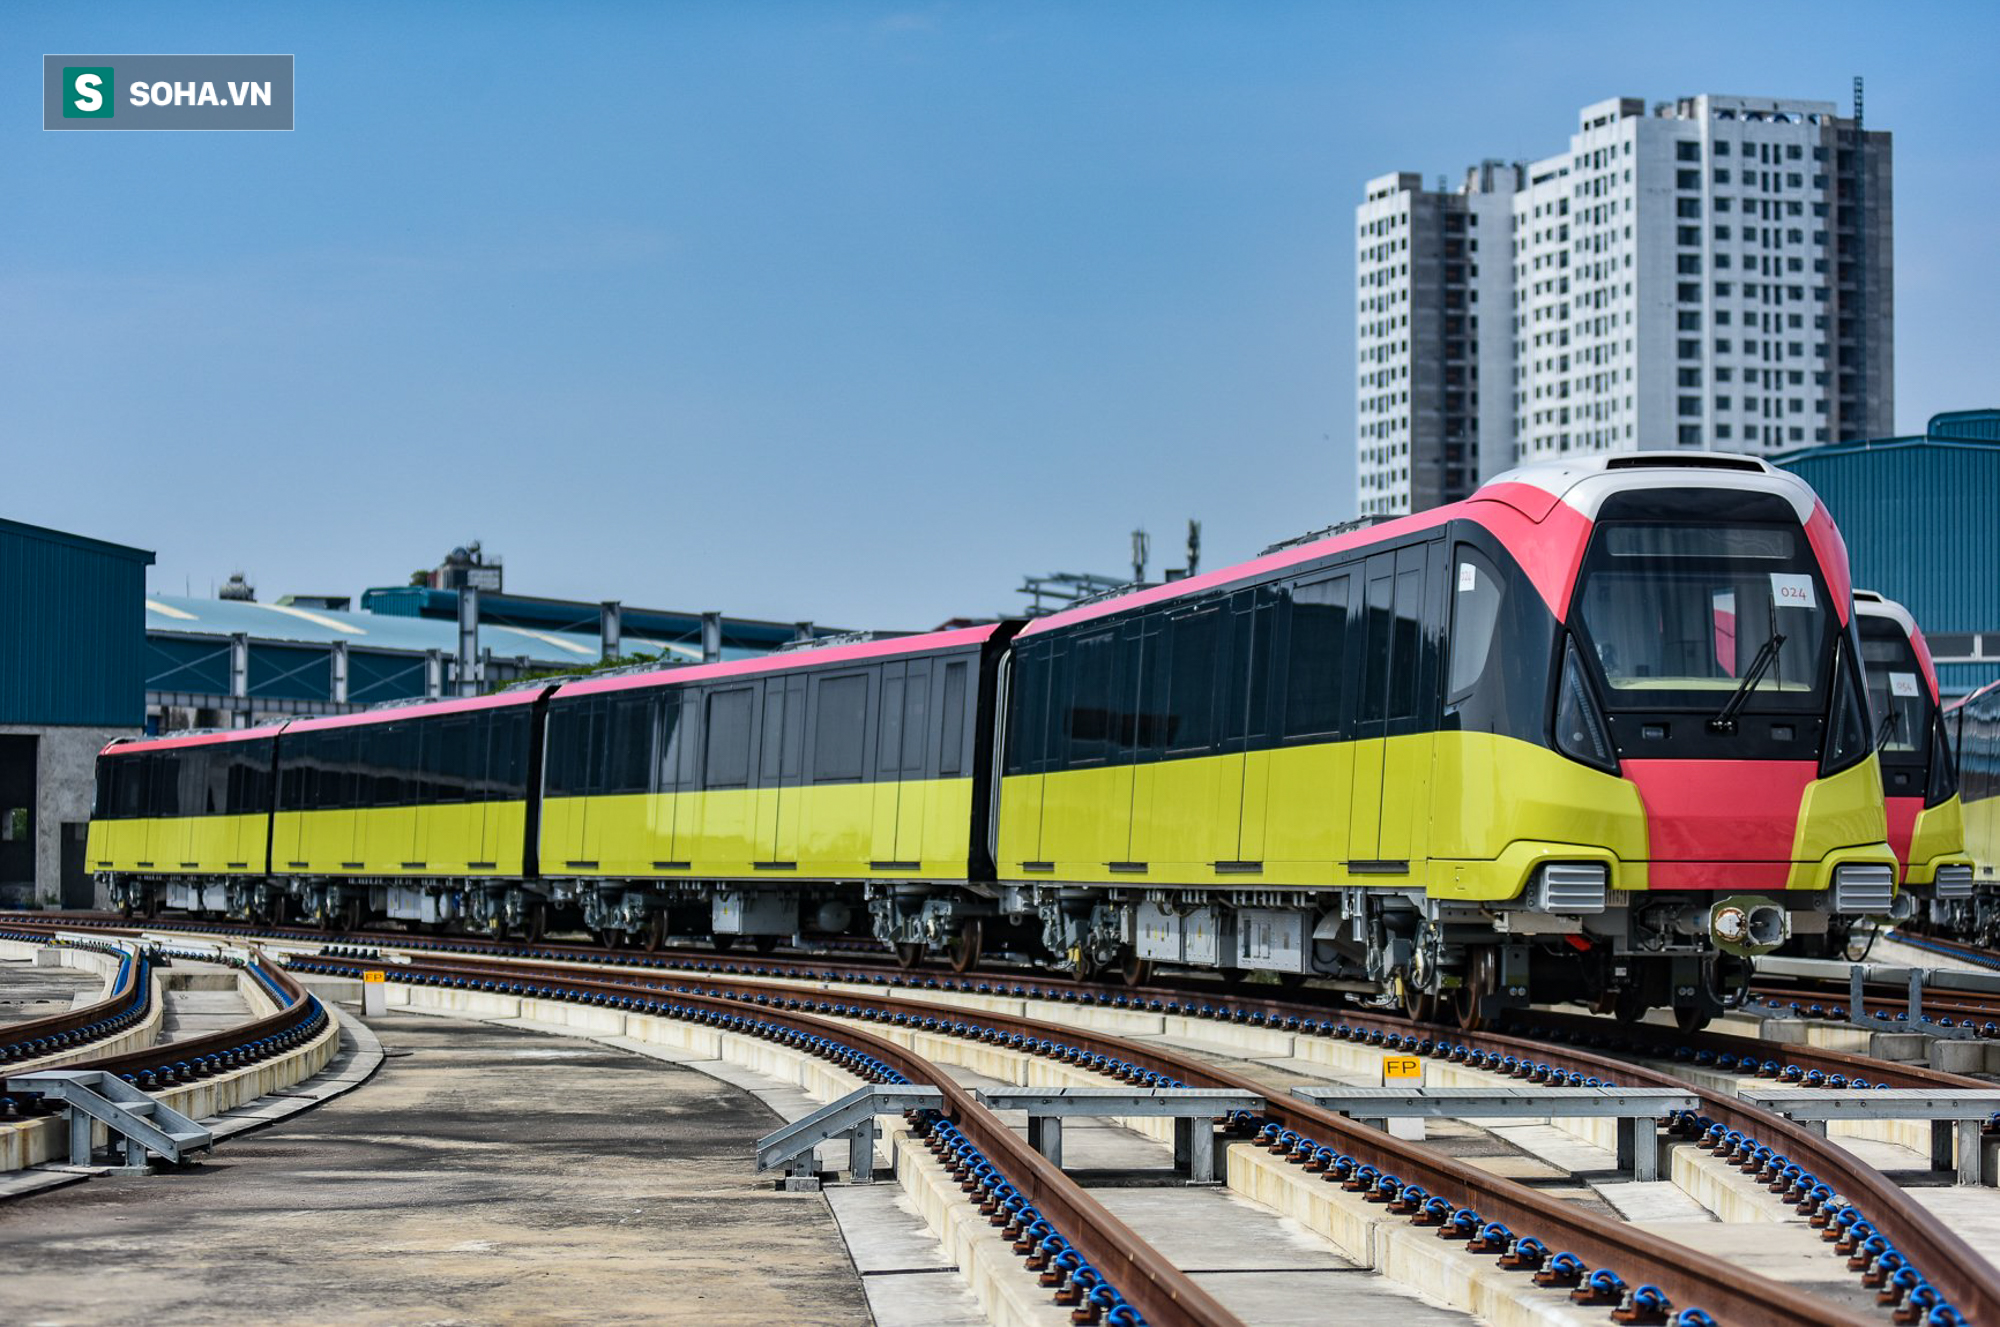 Hình ảnh mới, lạ mắt của tuyến Metro tỷ USD ở Thủ đô sắp chạy thử nghiệm đồng loạt - Ảnh 3.